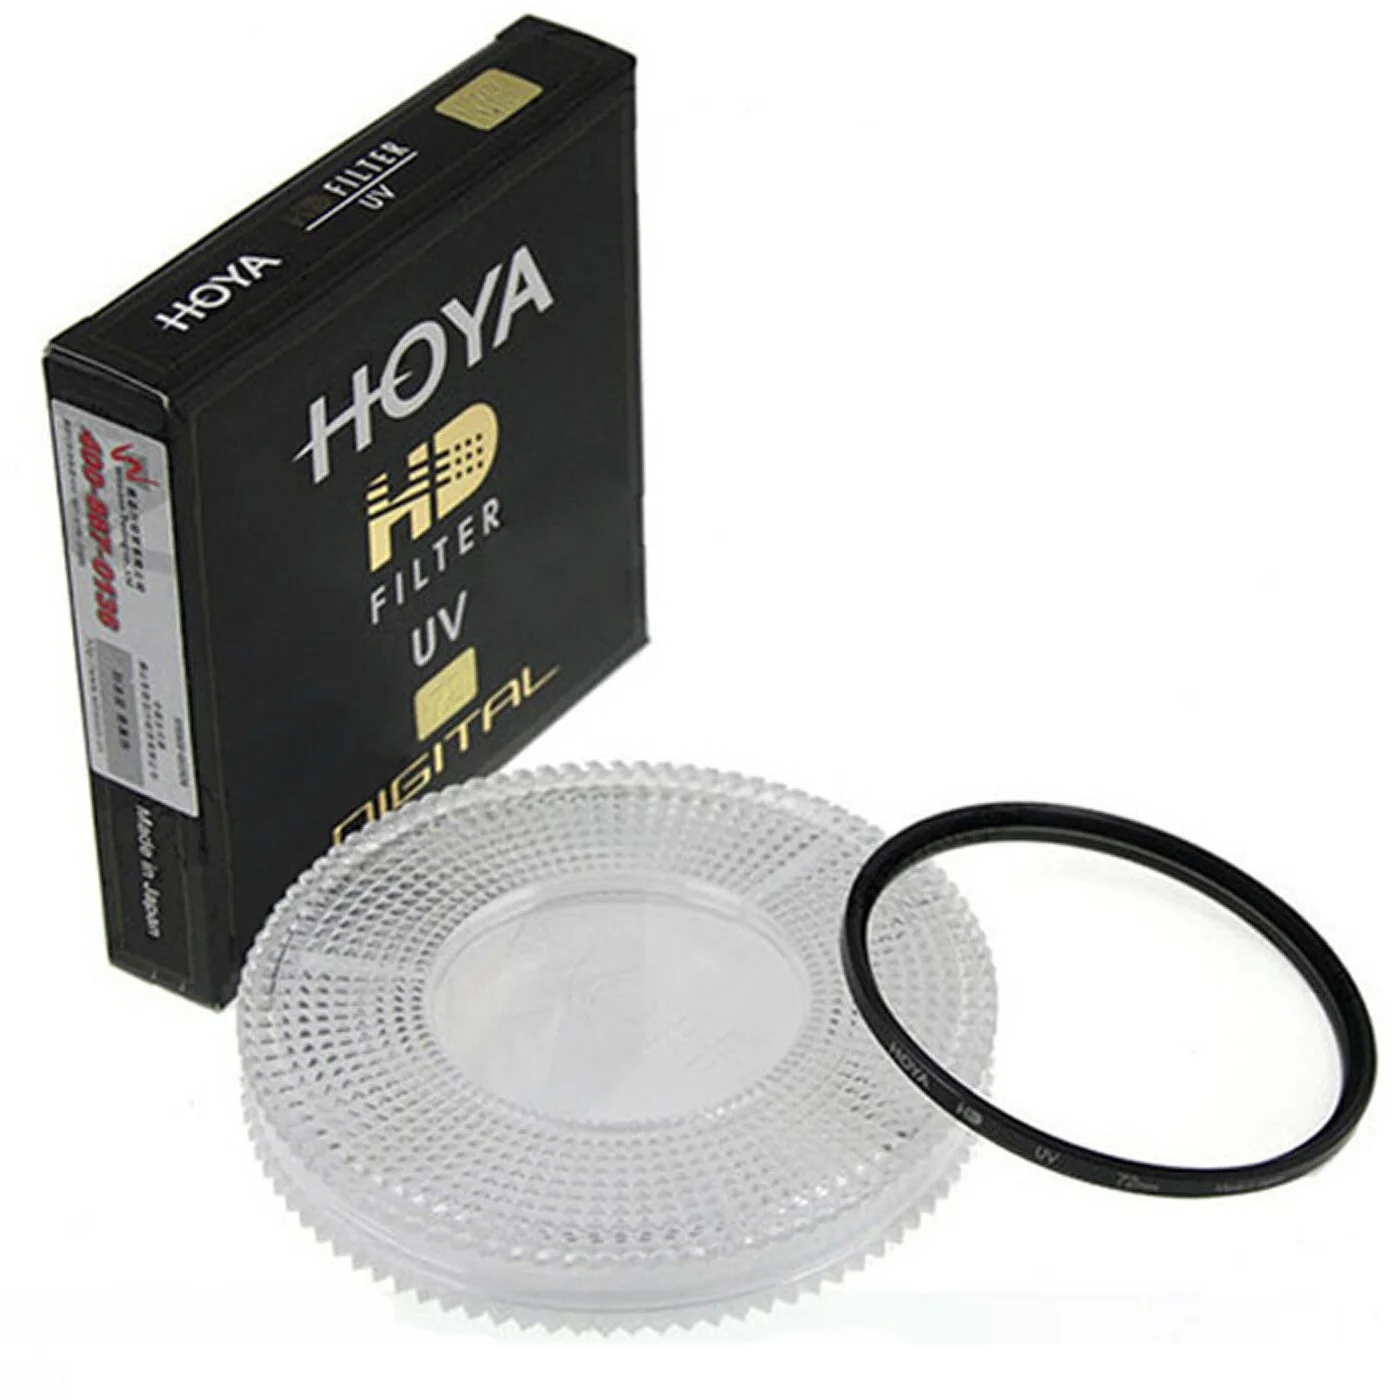 Hoya 77mm hd digital uv filtro de